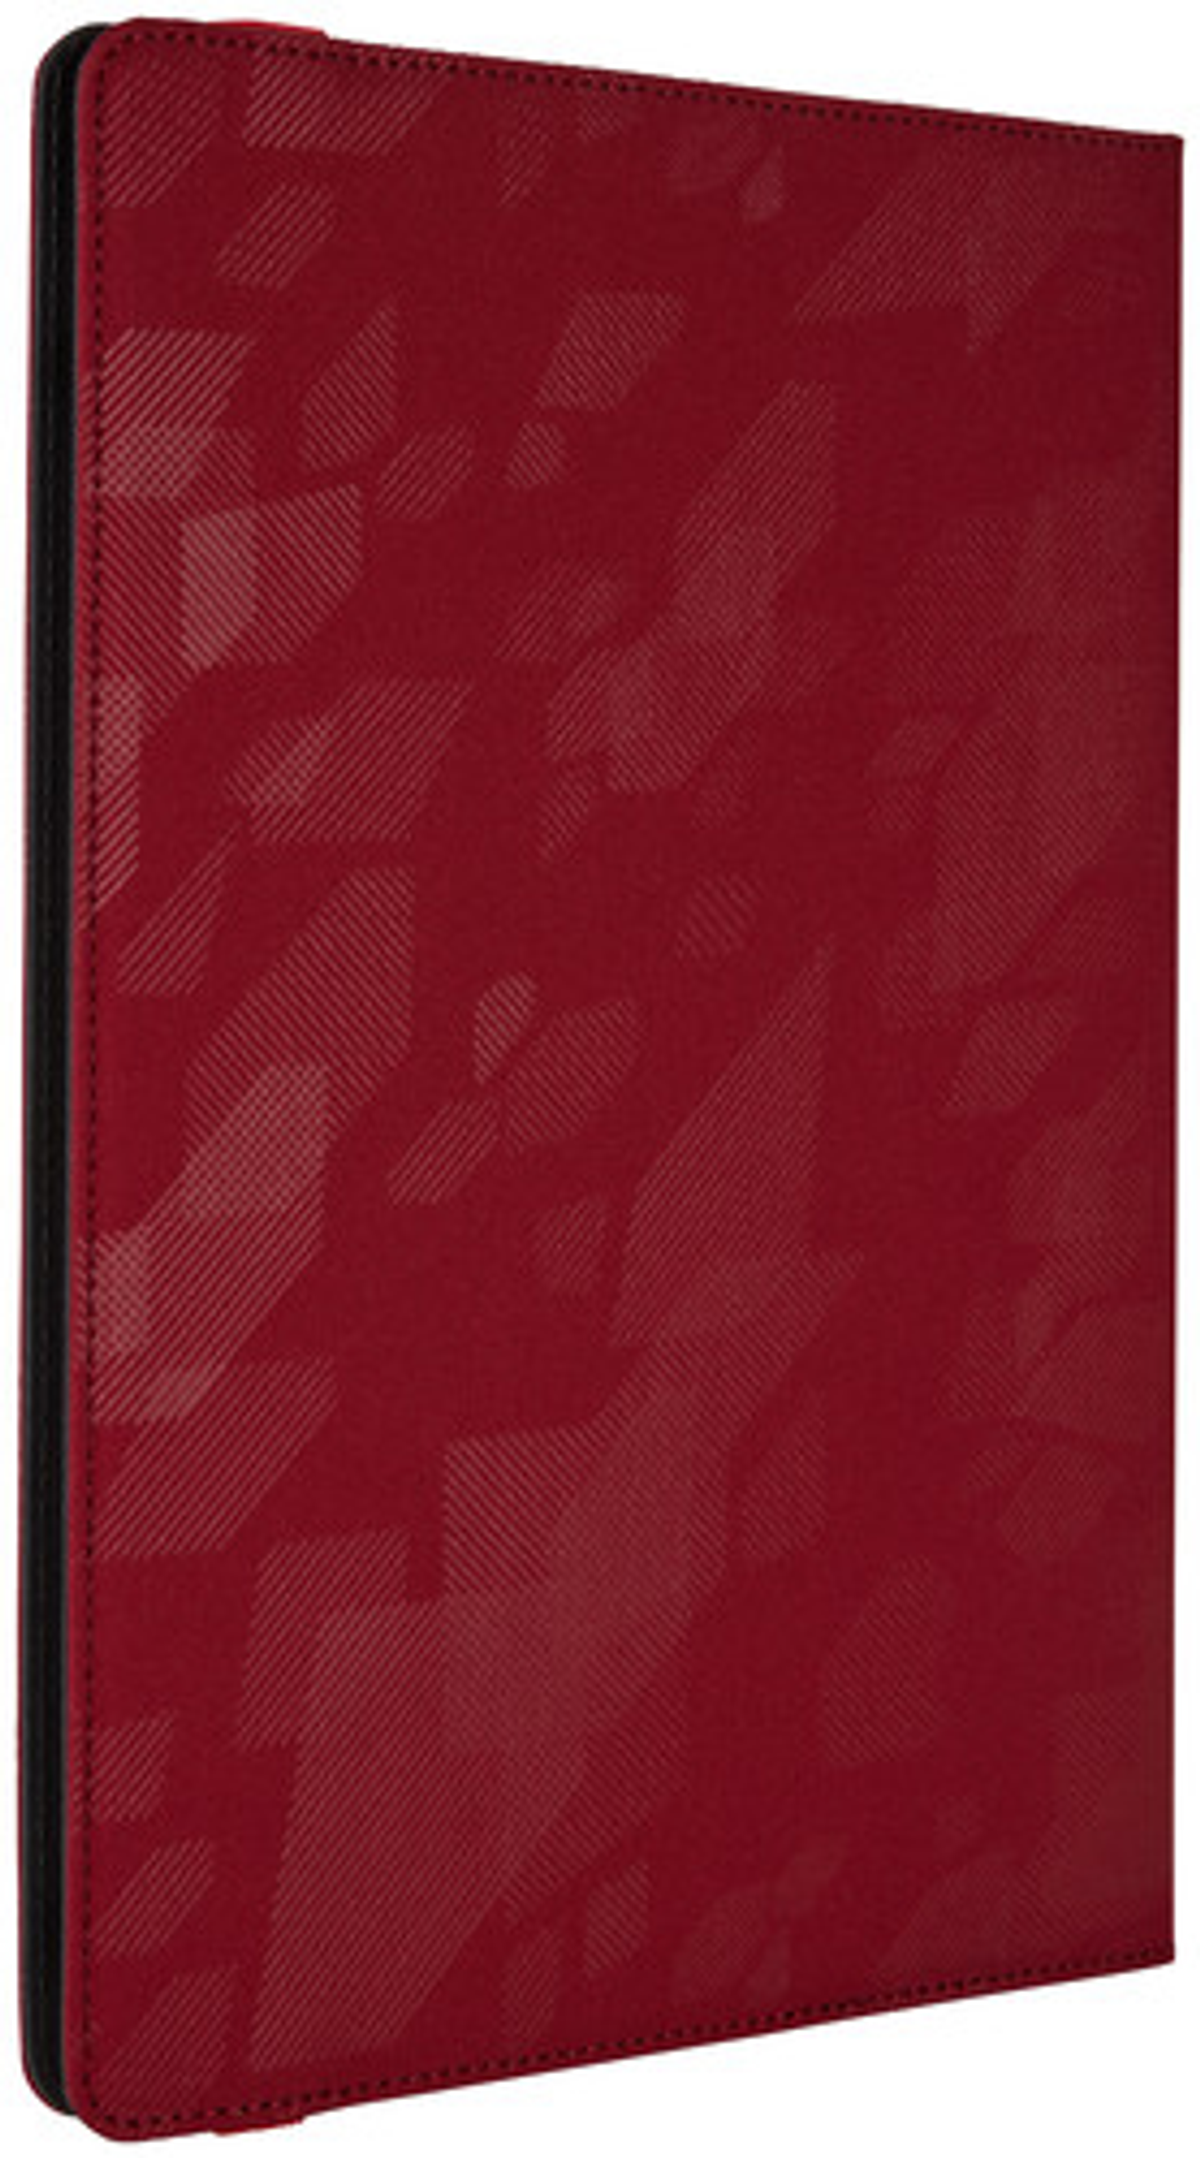 CASE LOGIC Folio Bookcover Bookcover Universal Polyester, für Boxcar